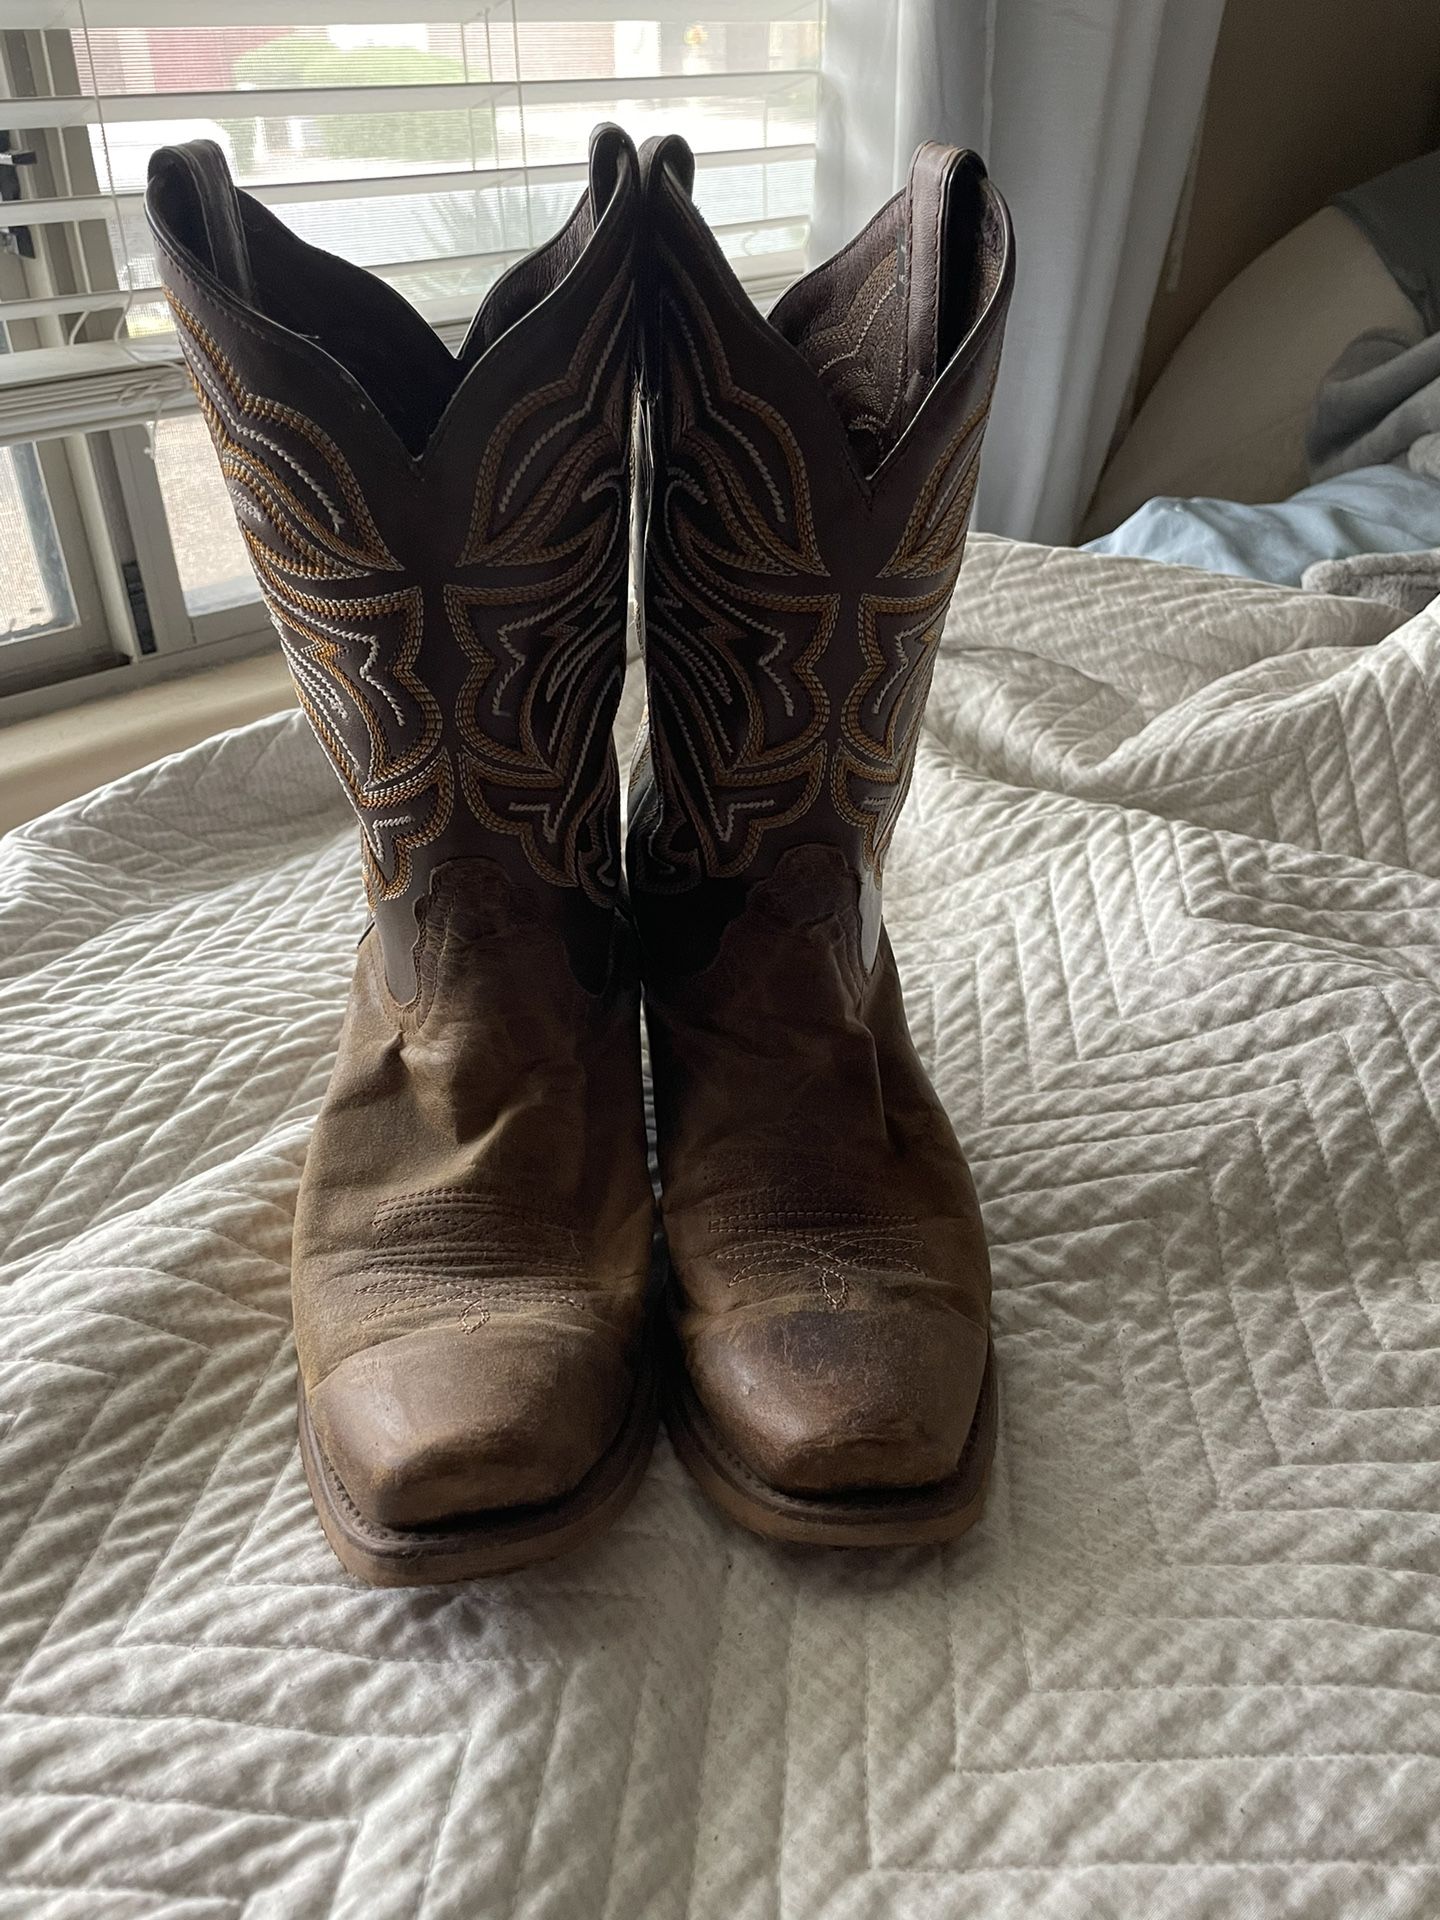 Women’s western boots